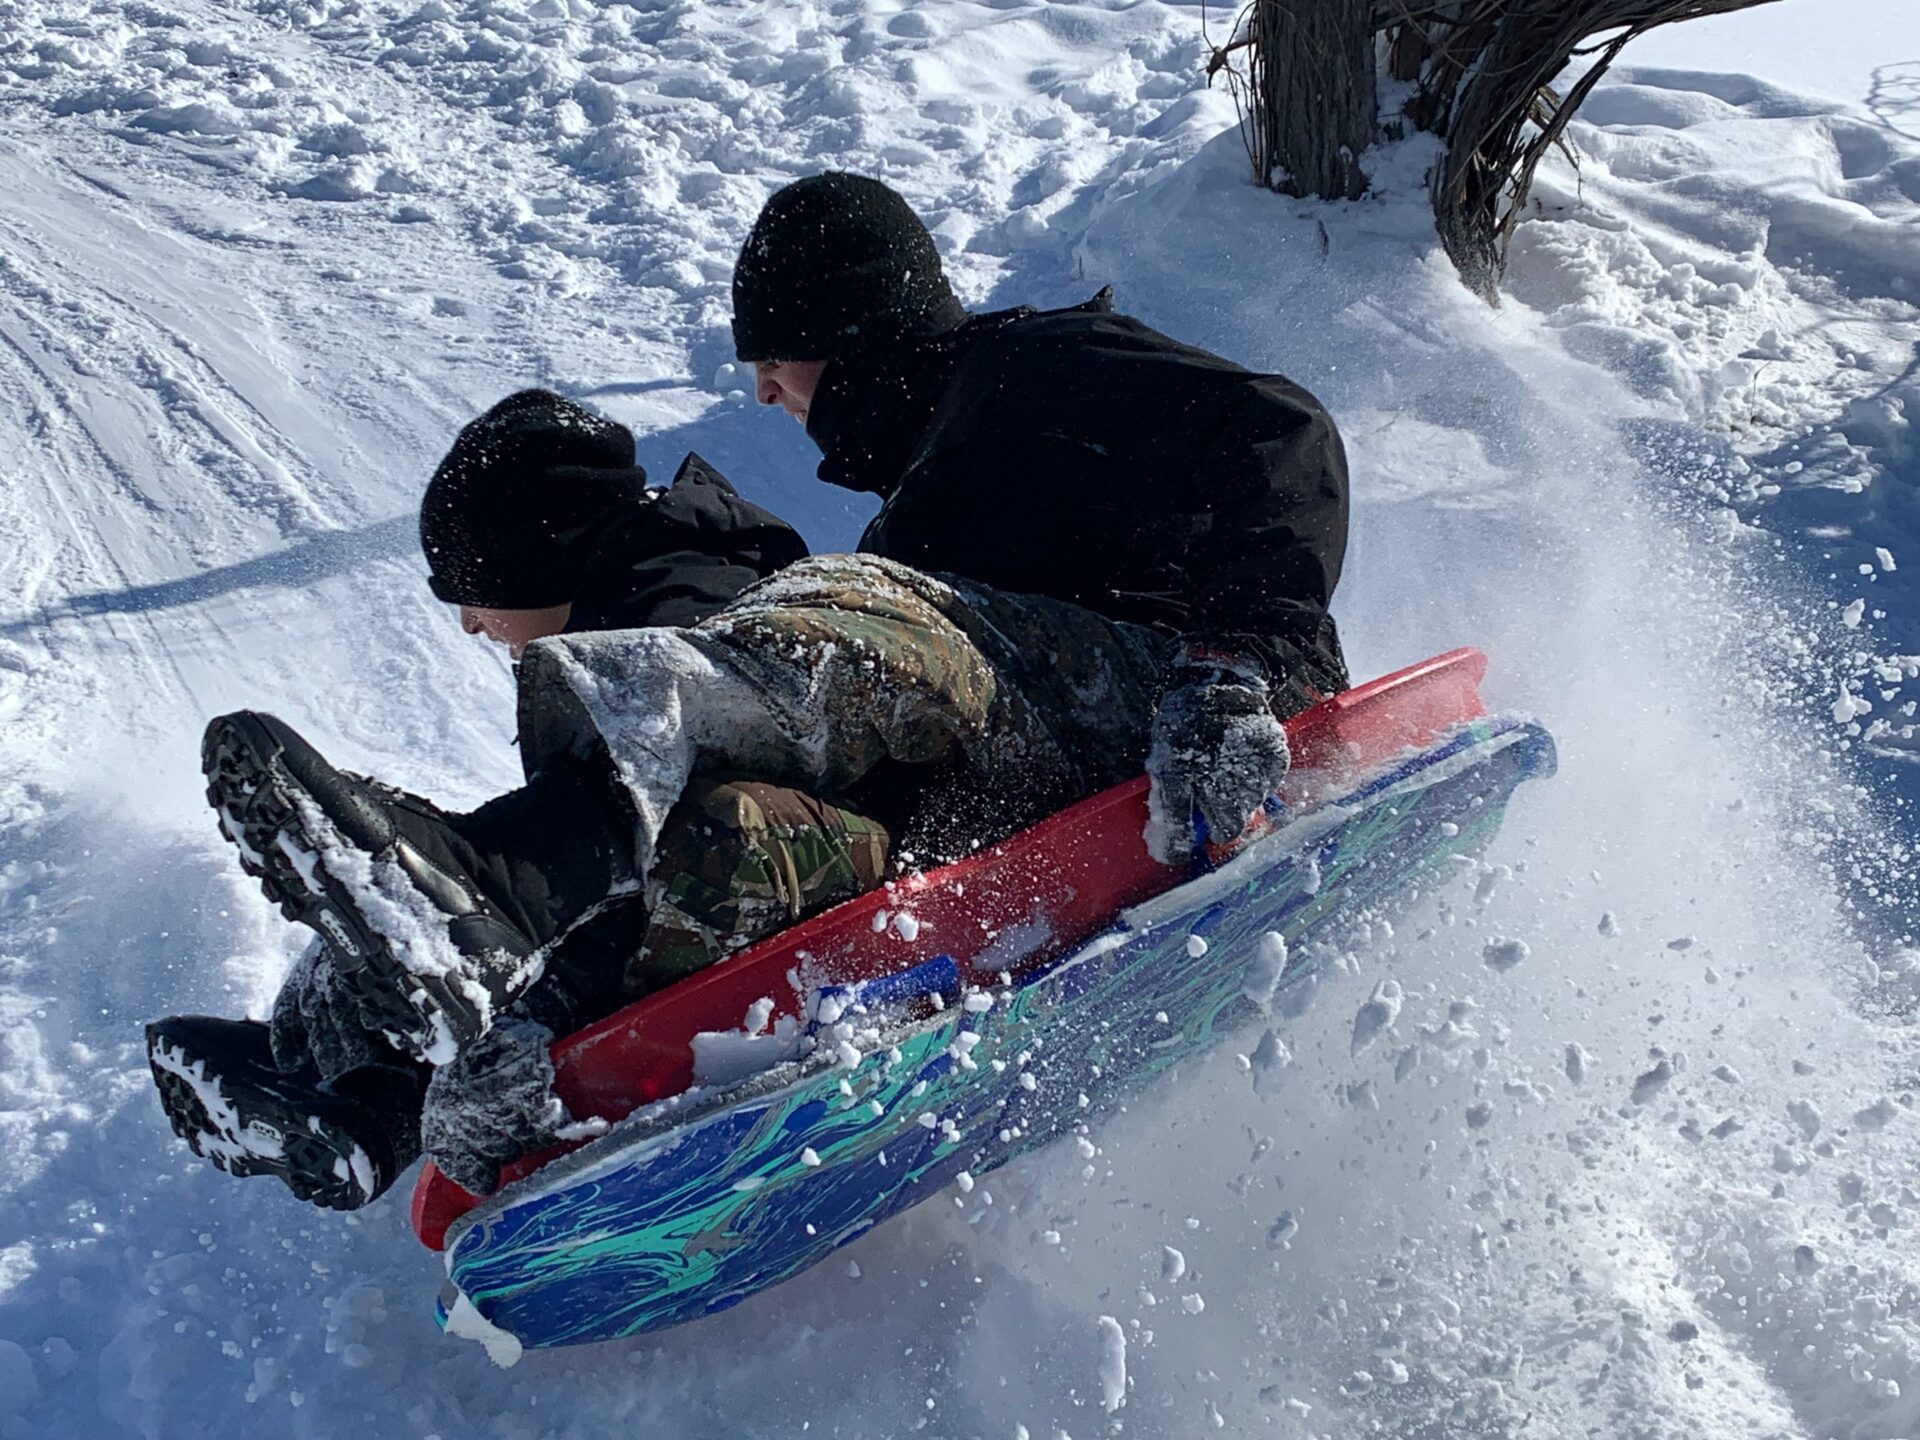 Students sledding